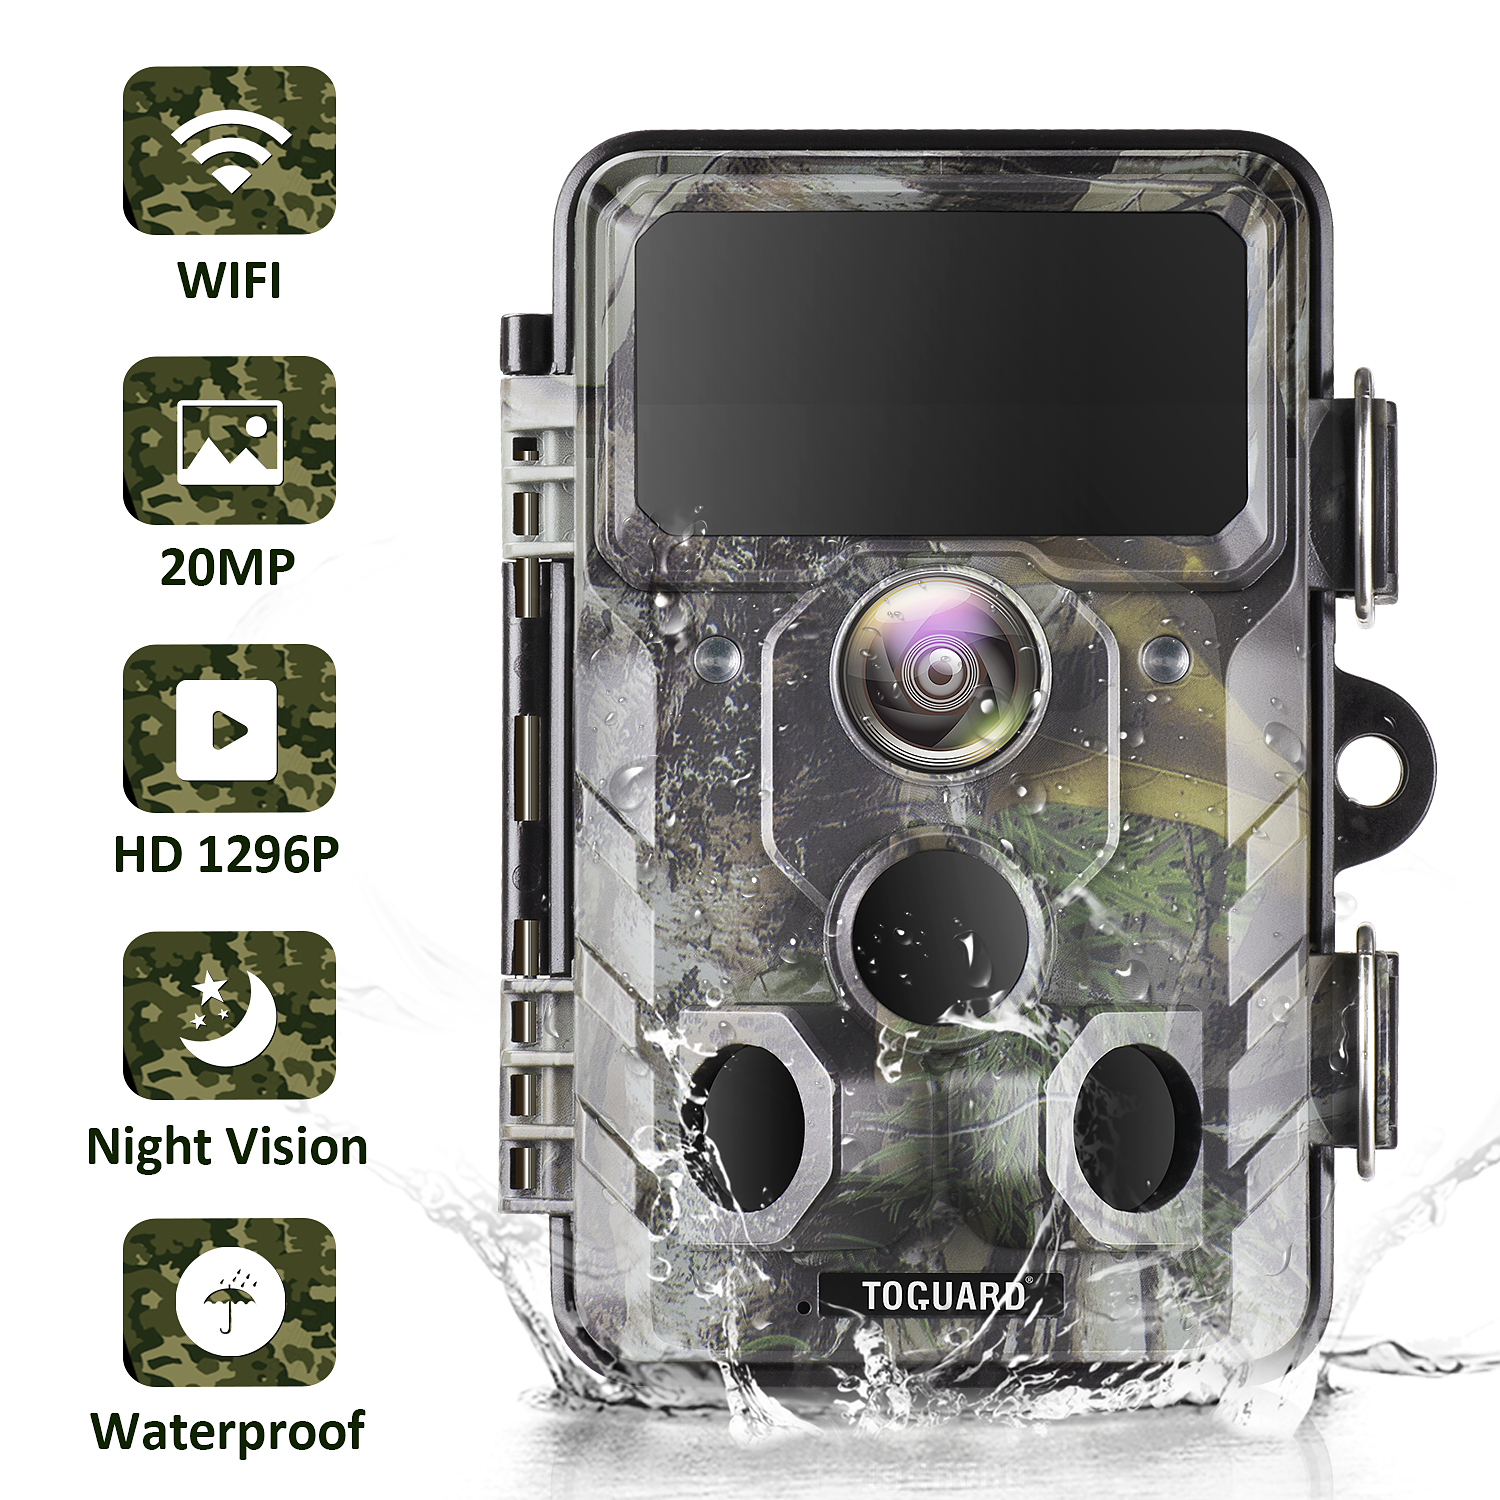 TOGUARD Caméra de chasse WiFi avec détecteur de mouvement Vision nocturne 20 MP 1296P Caméra de chasse vidéo avec grand angle de 120° IP66 Caméra de surveillance étanche avec écran LCD 2 